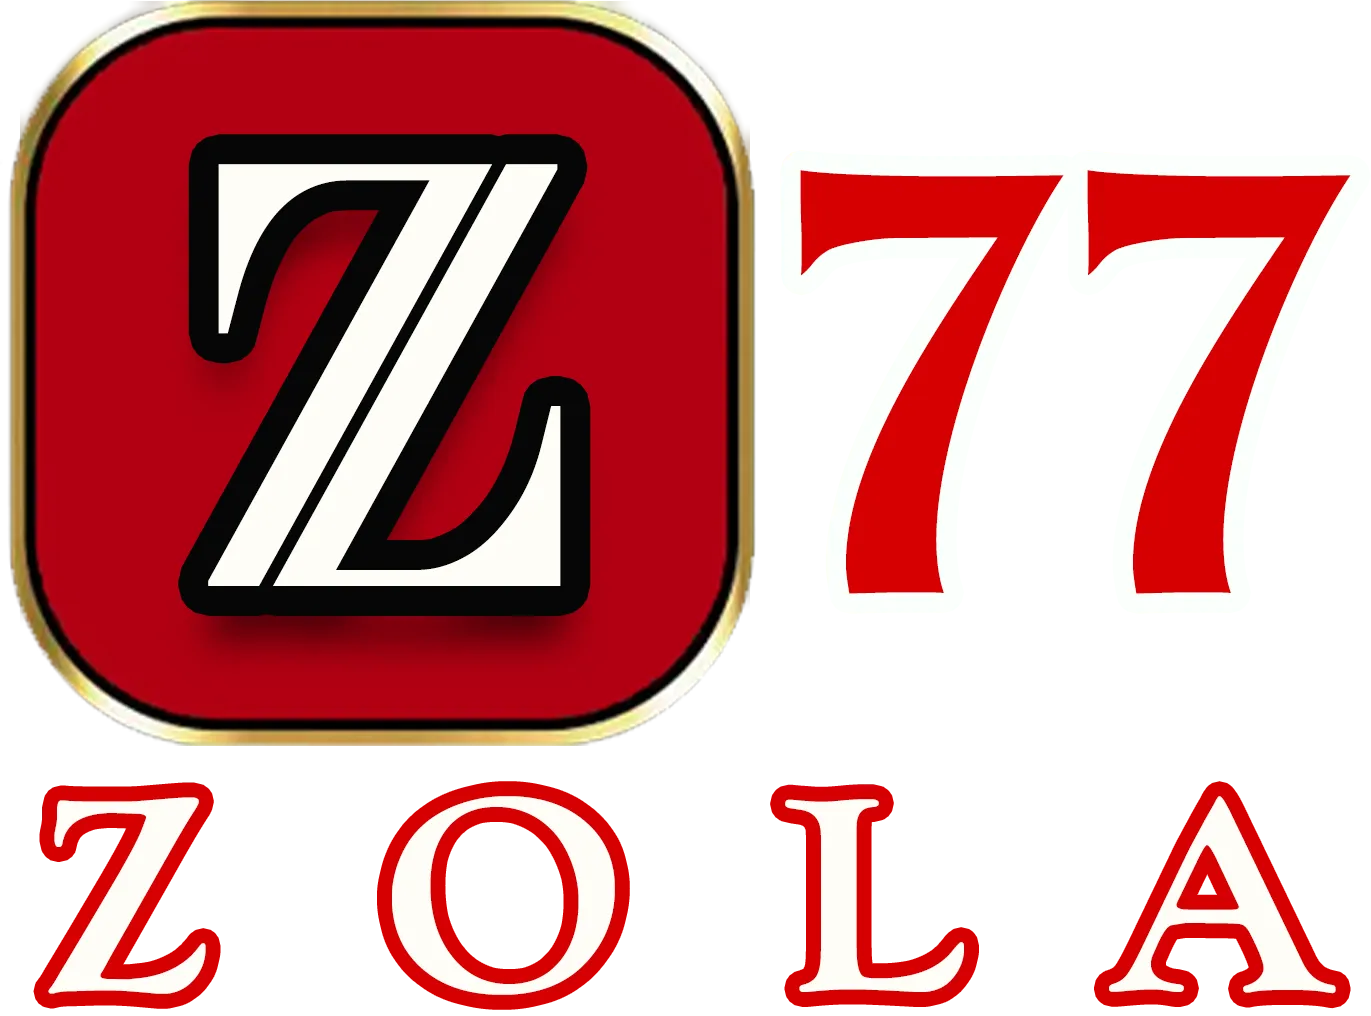 Zola77